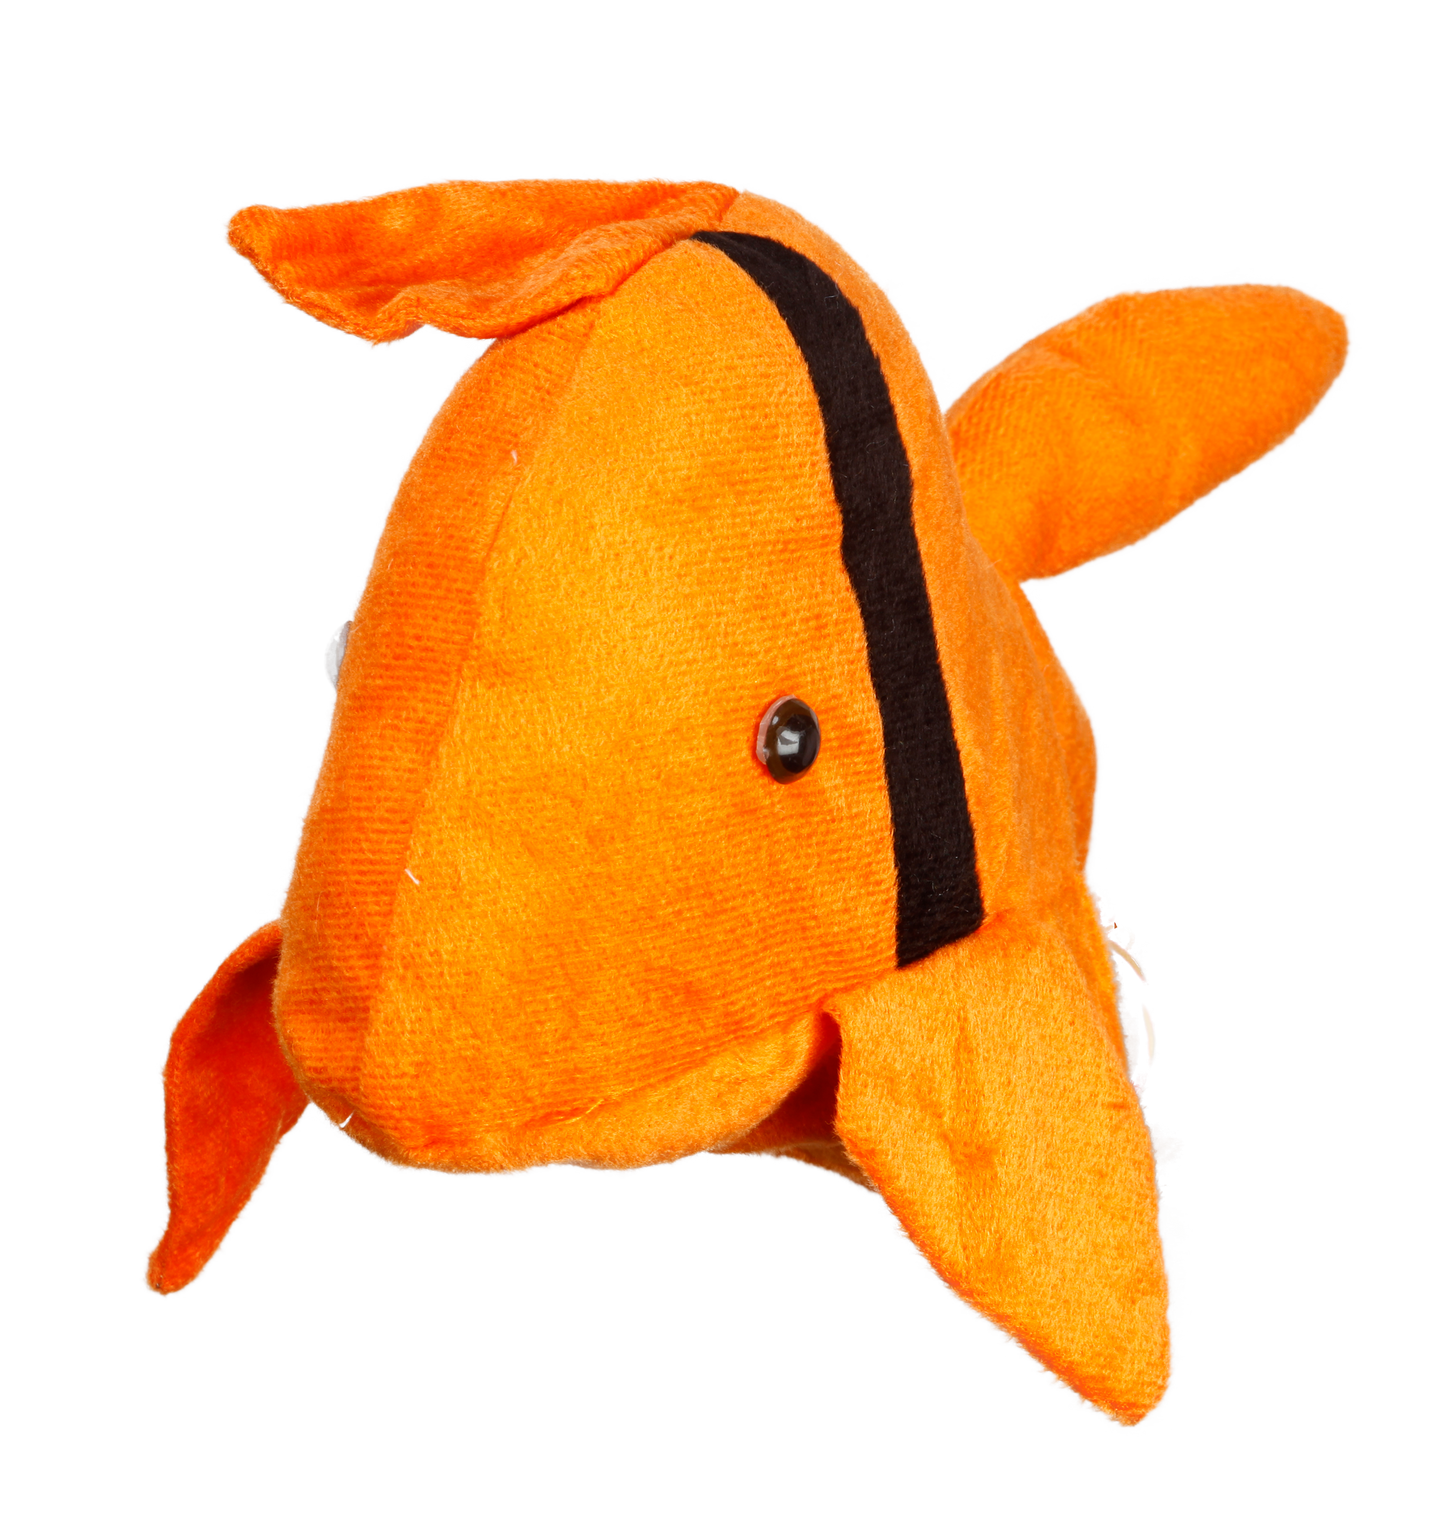 Vr/Glove Puppet Fish